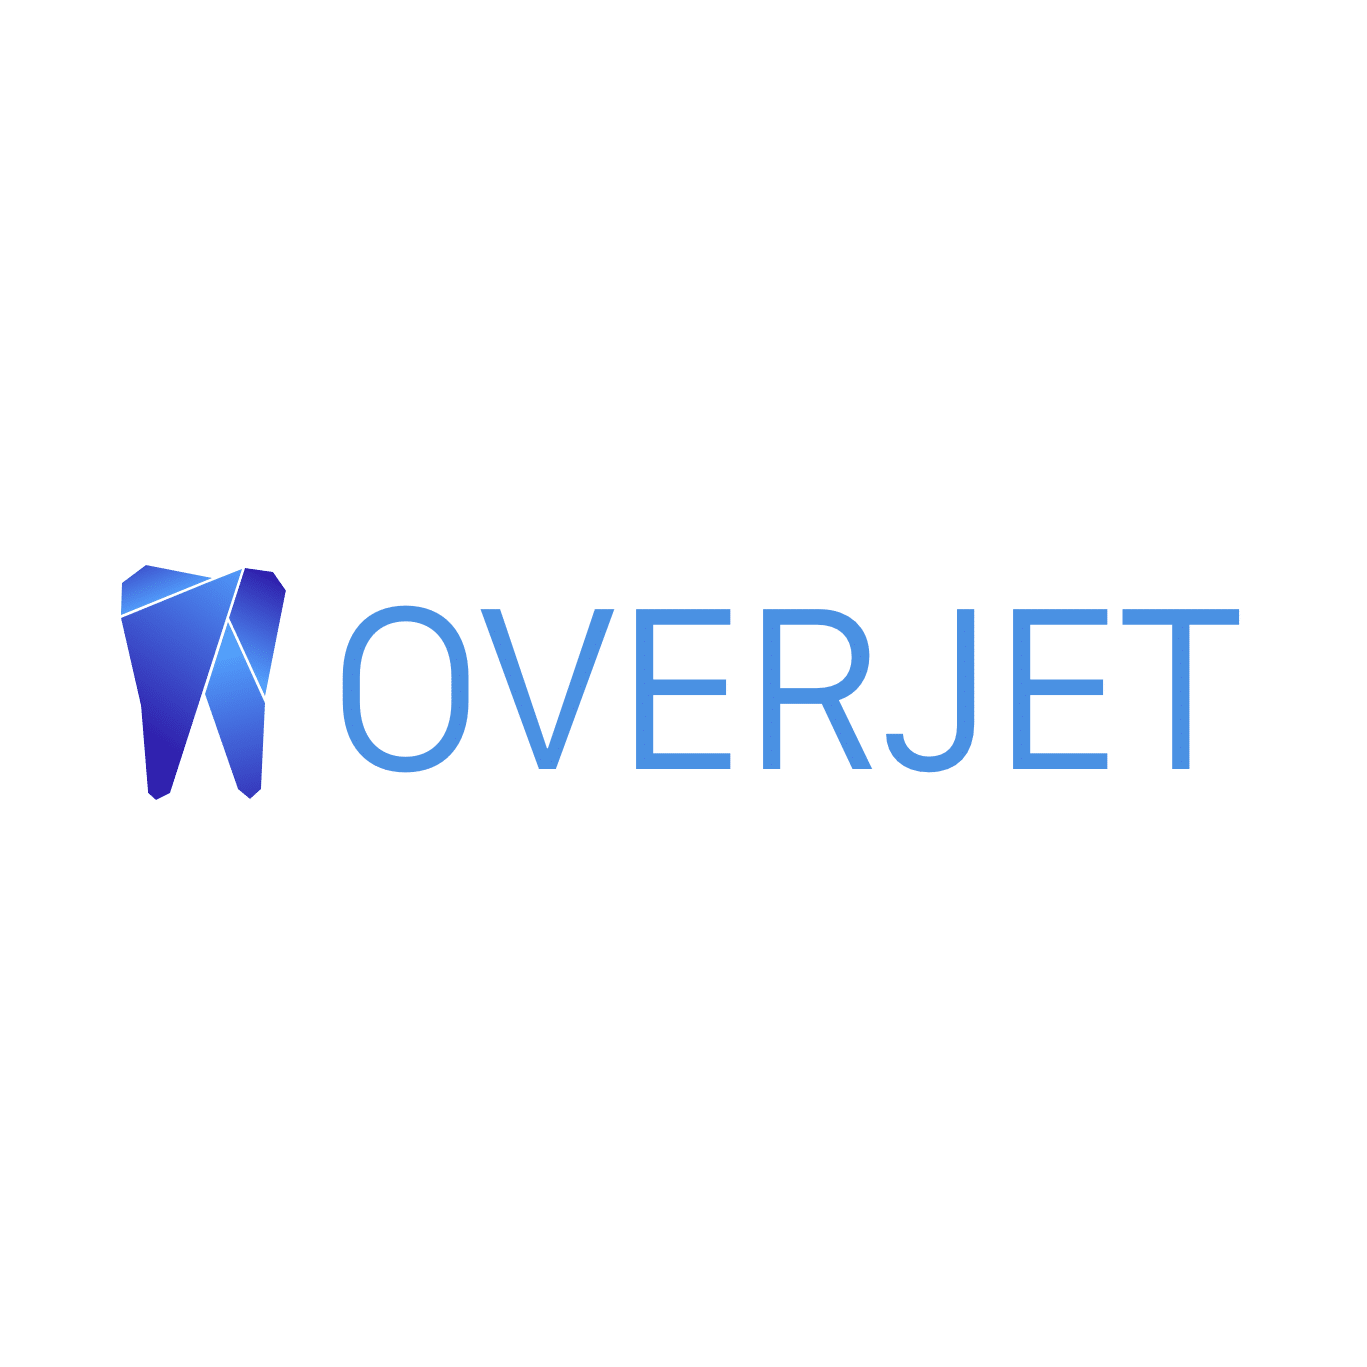 Overjet logo